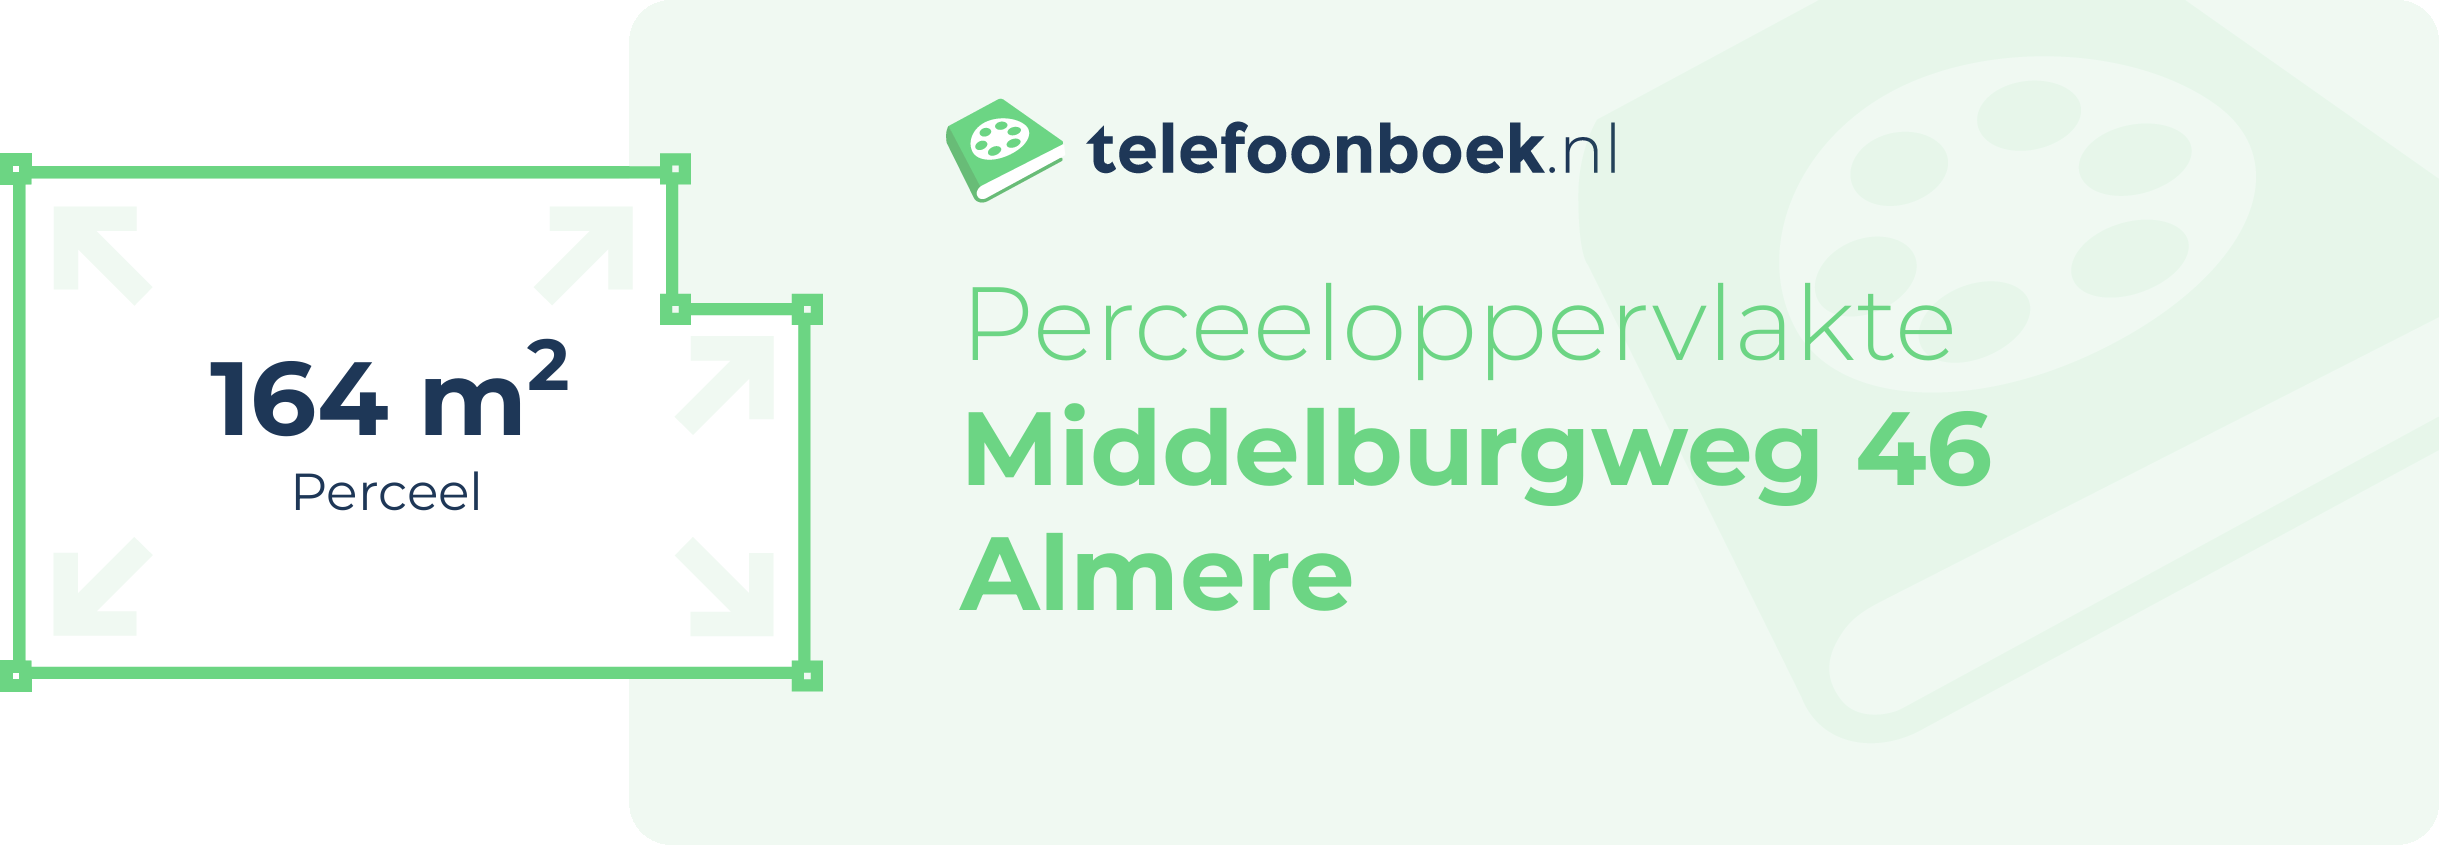 Perceeloppervlakte Middelburgweg 46 Almere